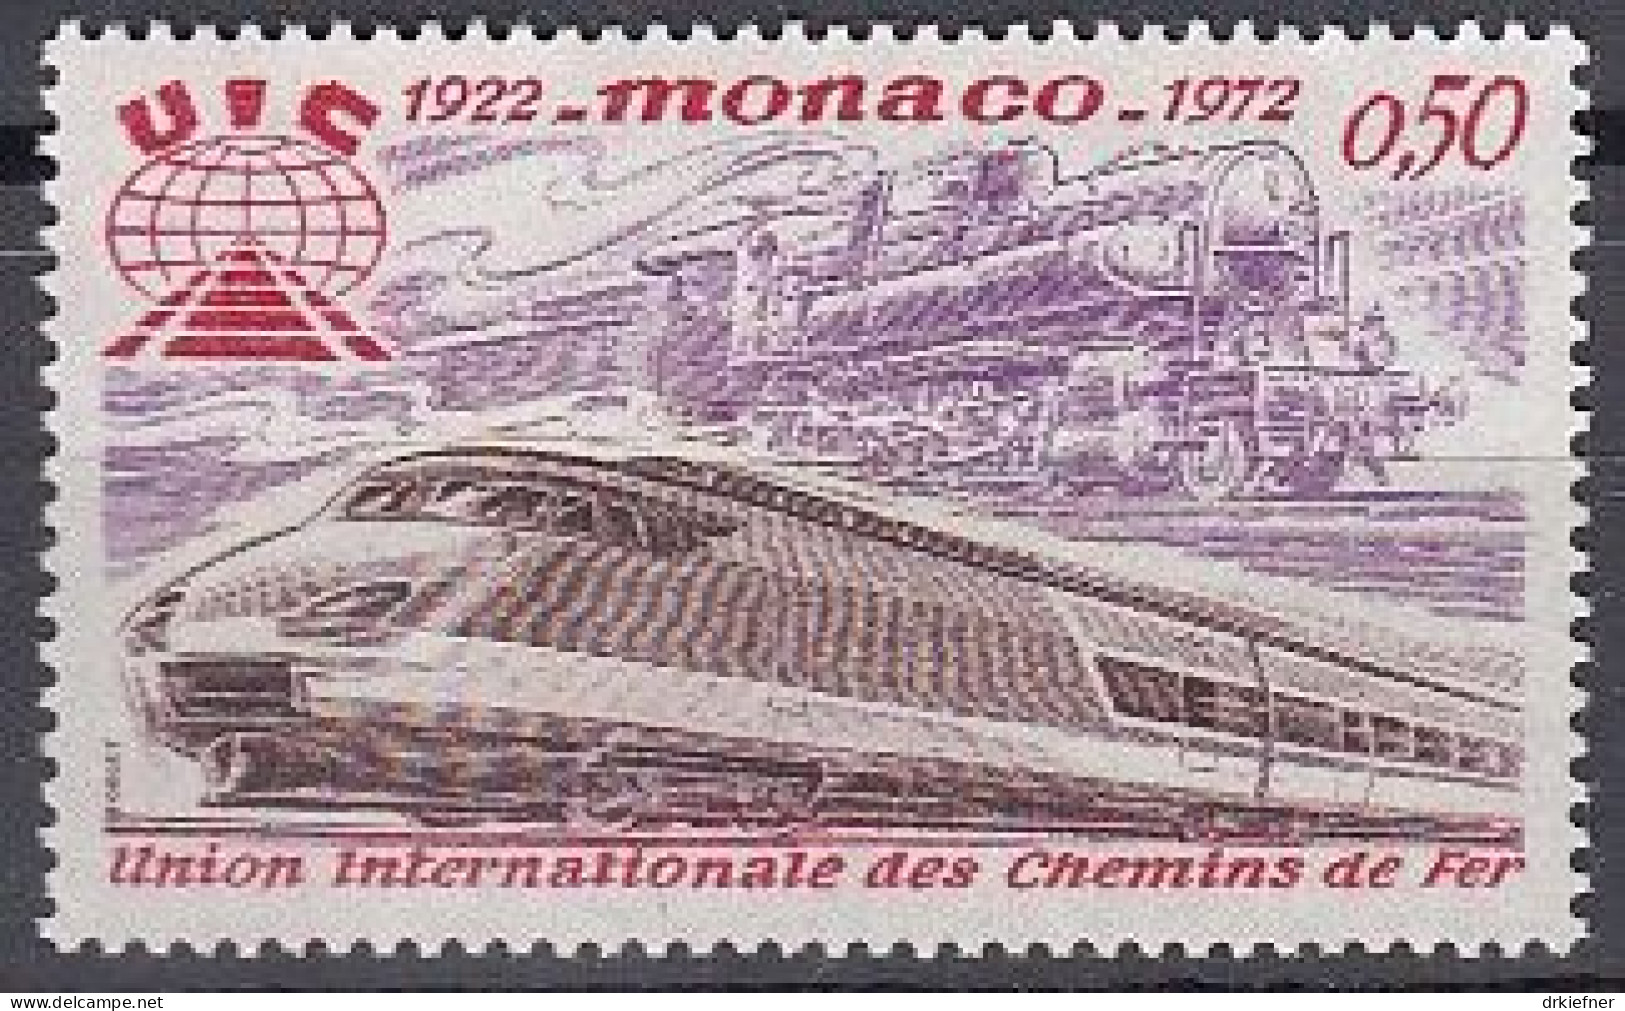 MONACO  1034, Postfrisch **, Eisenbahn-Verband, Dampflok, TGV, 1972 - Ungebraucht